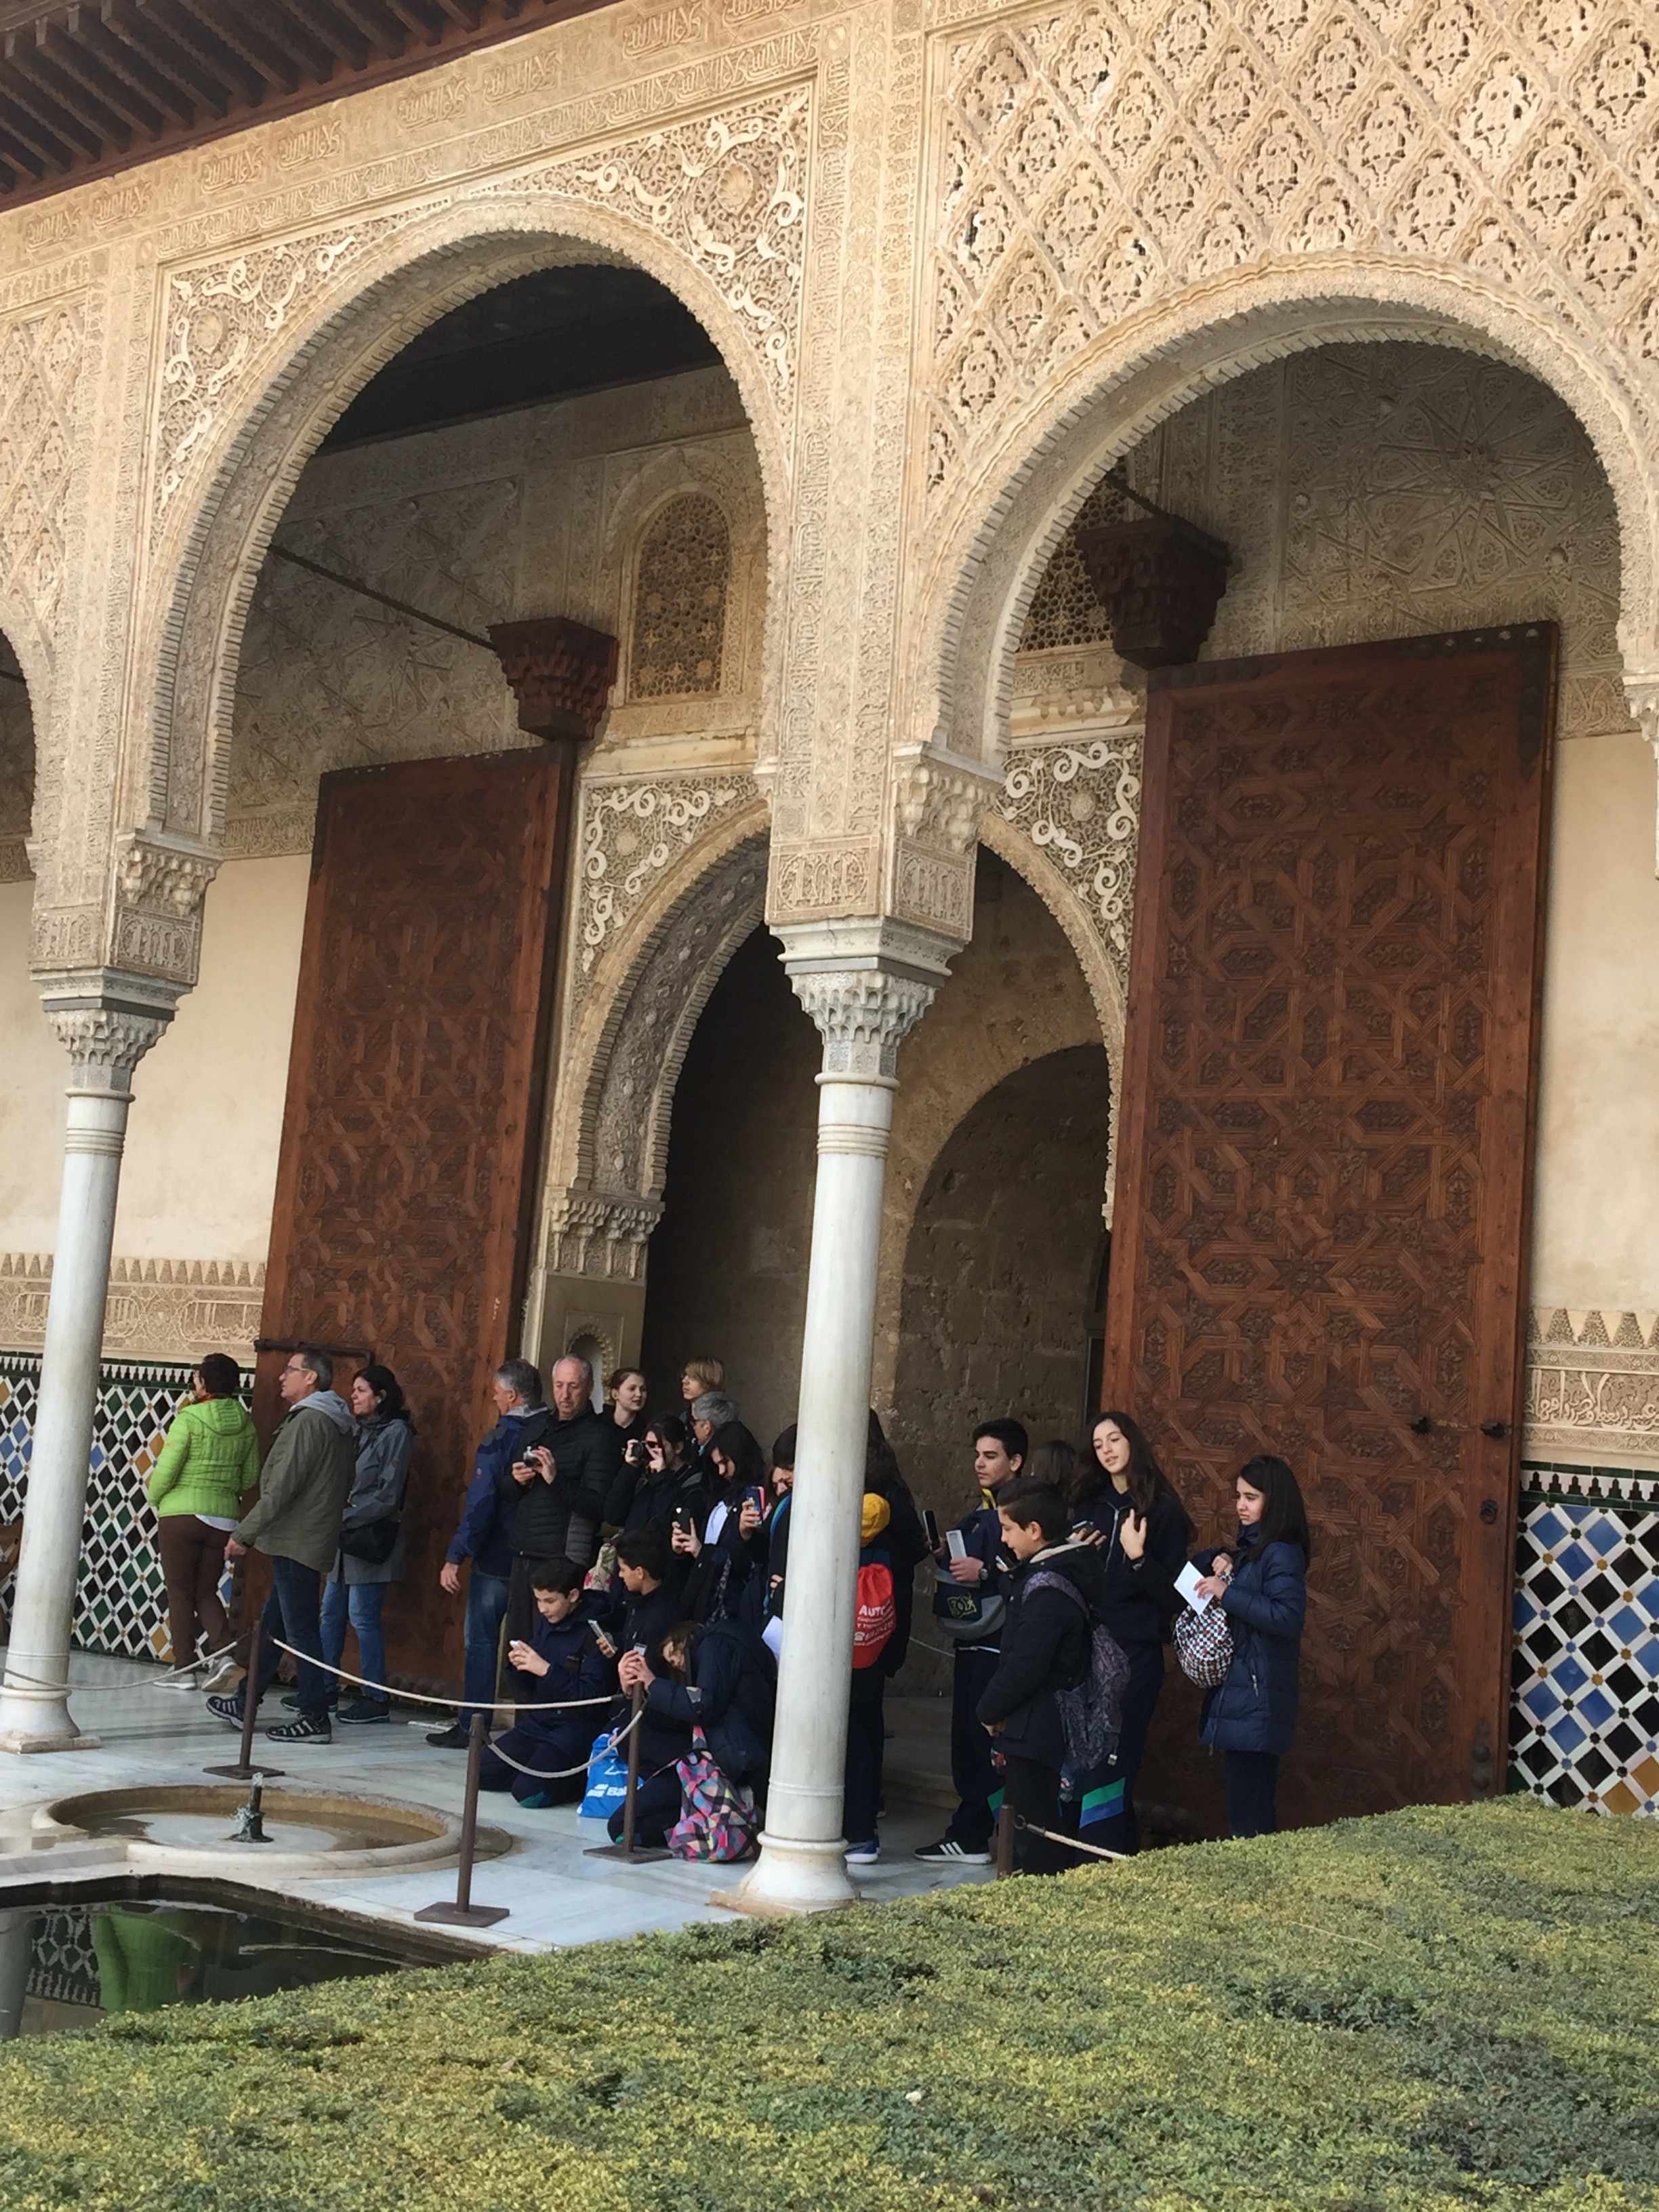 Un bonito día con mis compañeros en la Alhambra